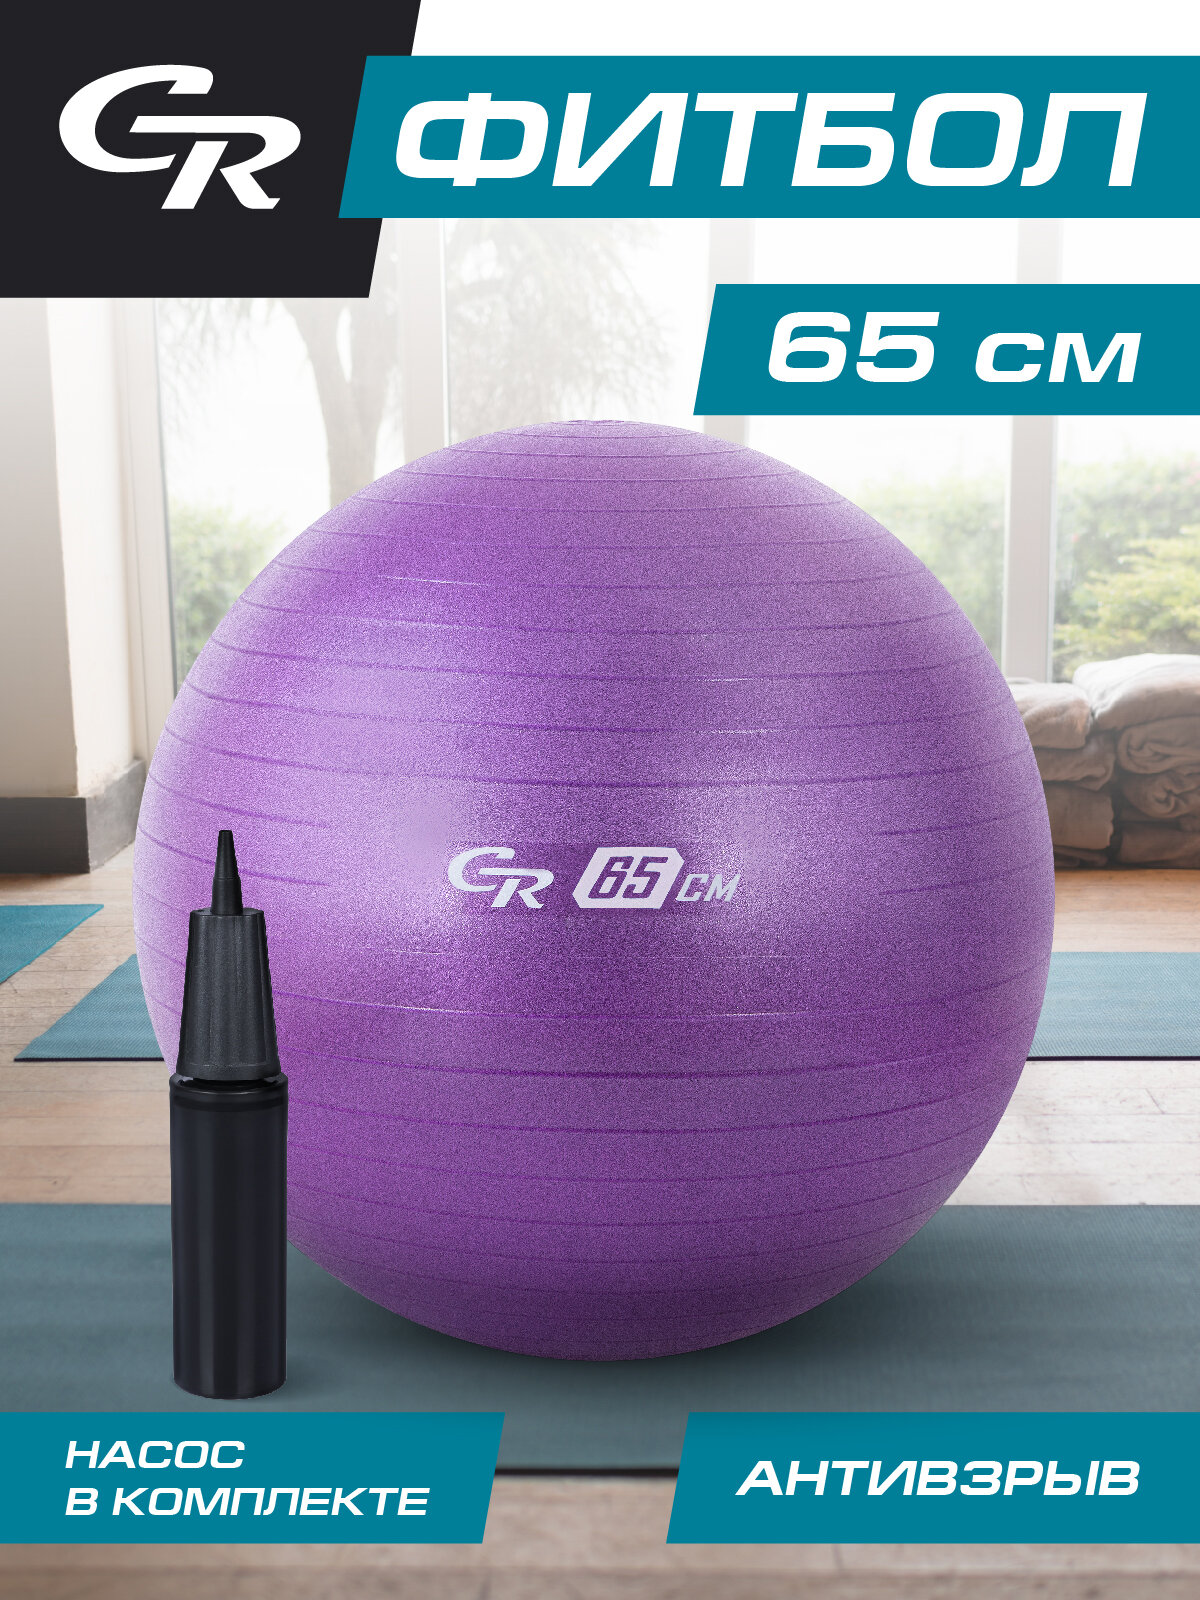 Мяч гимнастический фитбол ТМ CR, для фитнеса, 65 см, 1000 г, антивзрыв, насос, цвет лавандовый